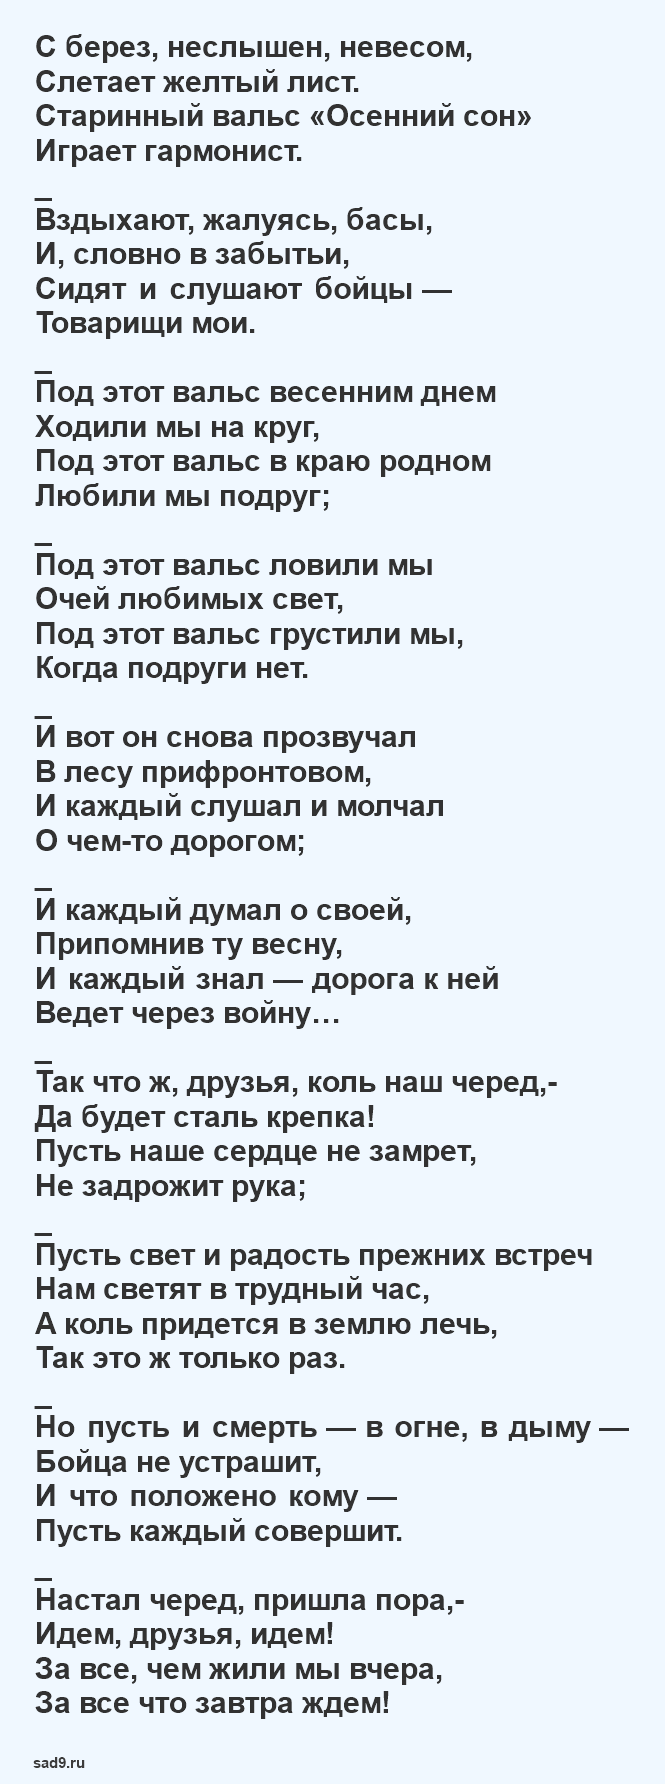 Стихи Исаковского о войне - В прифронтовом лесу